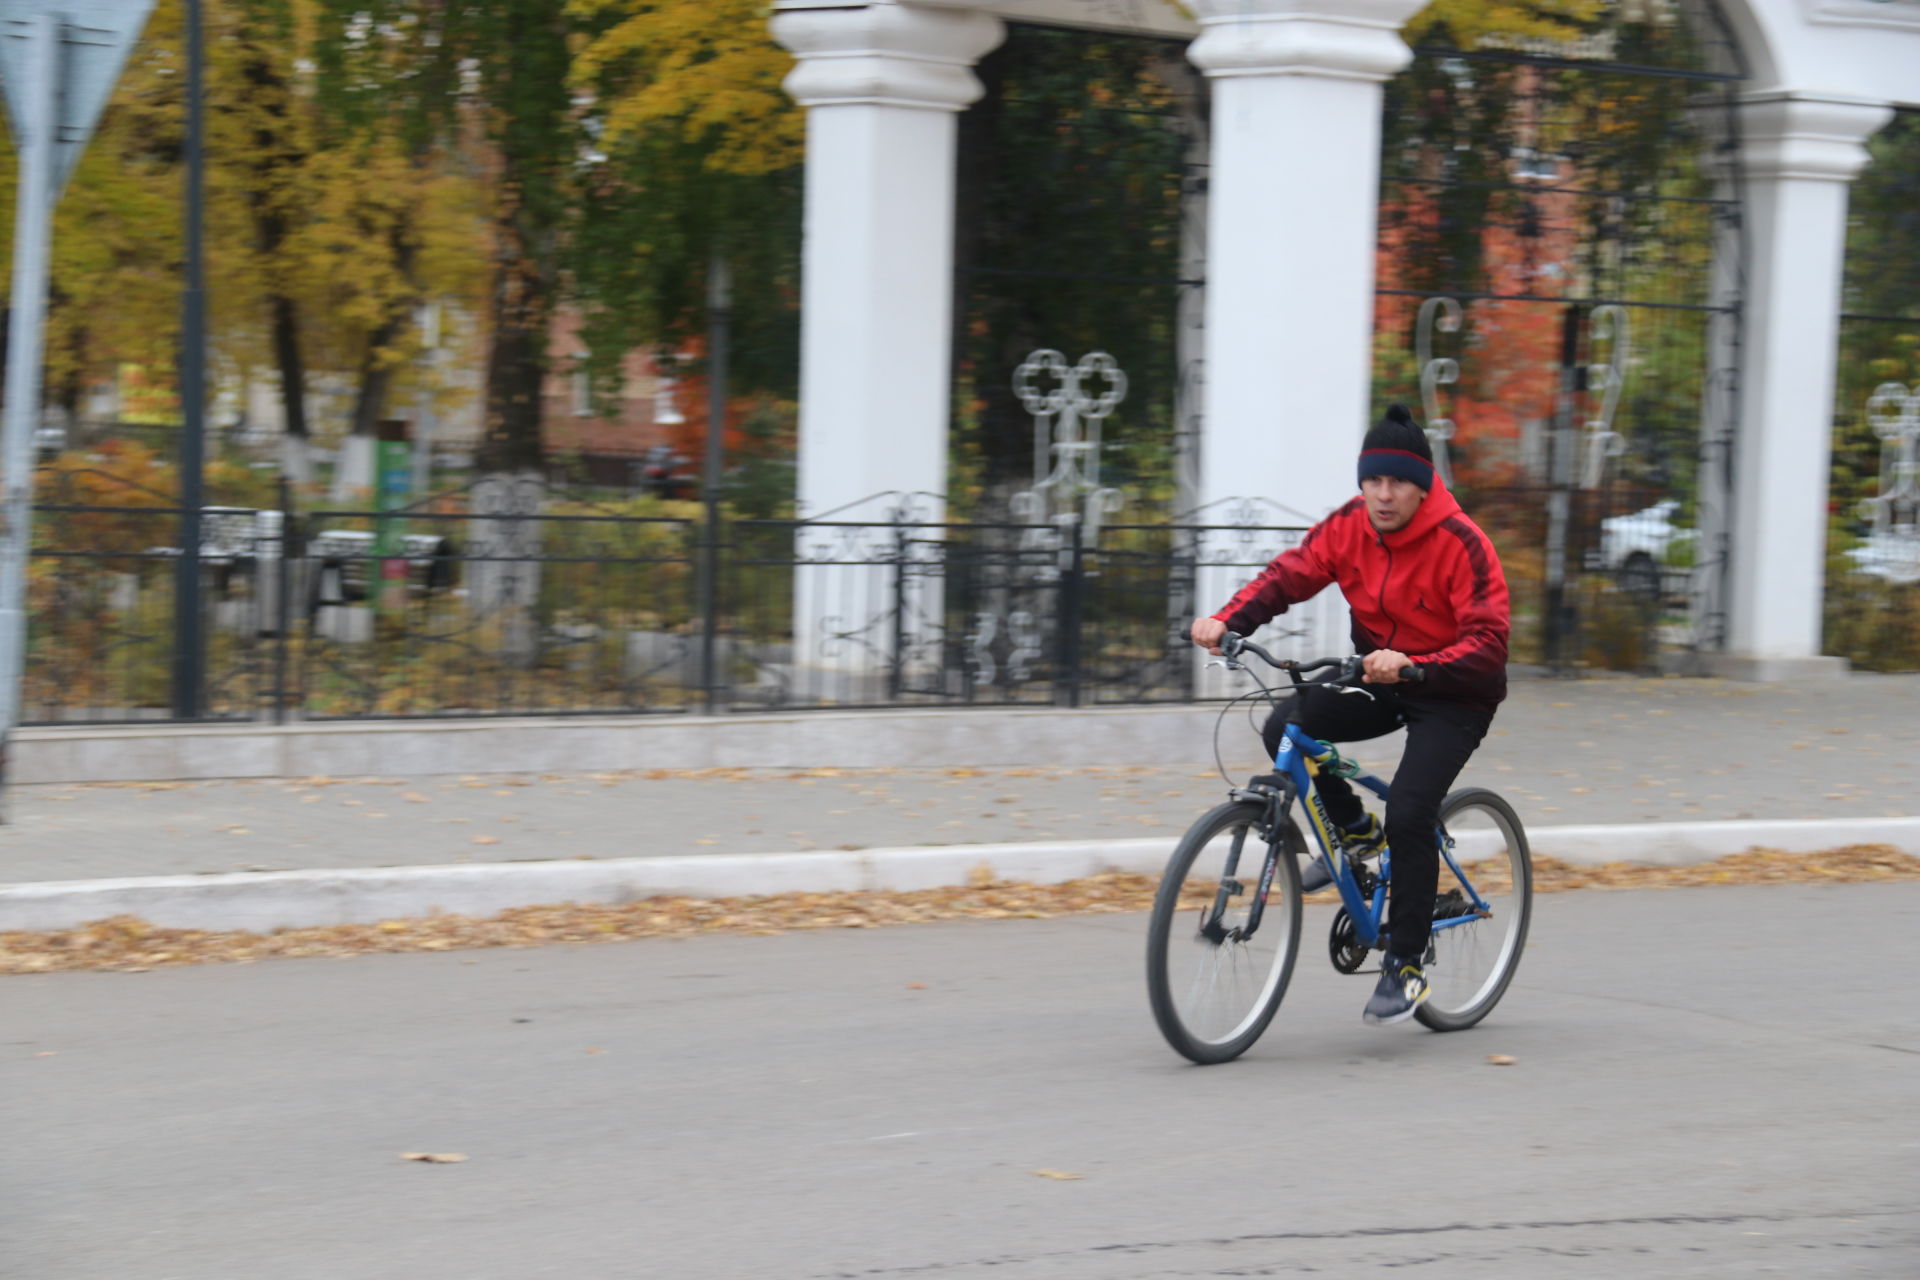 Стартовавший в поселке Уруссу велопробег был посвящен обличению подрастающим поколением экстремизма